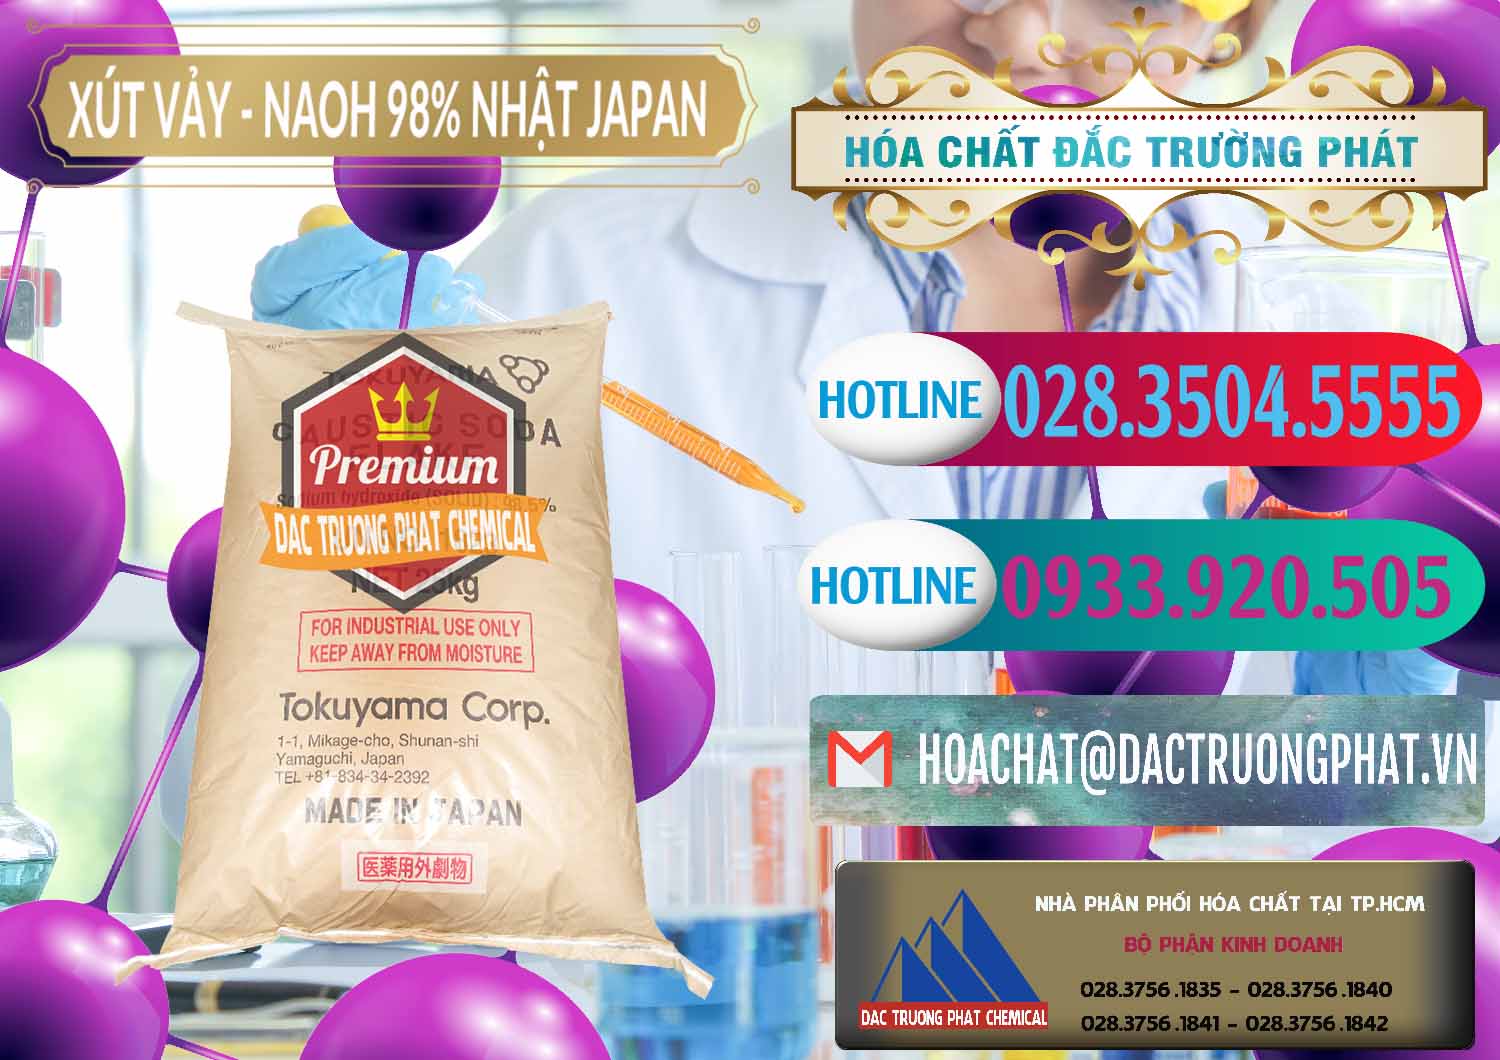 Cty chuyên bán - cung ứng Xút Vảy - NaOH Vảy 98% Tokuyama Nhật Bản Japan - 0173 - Công ty cung cấp - nhập khẩu hóa chất tại TP.HCM - truongphat.vn